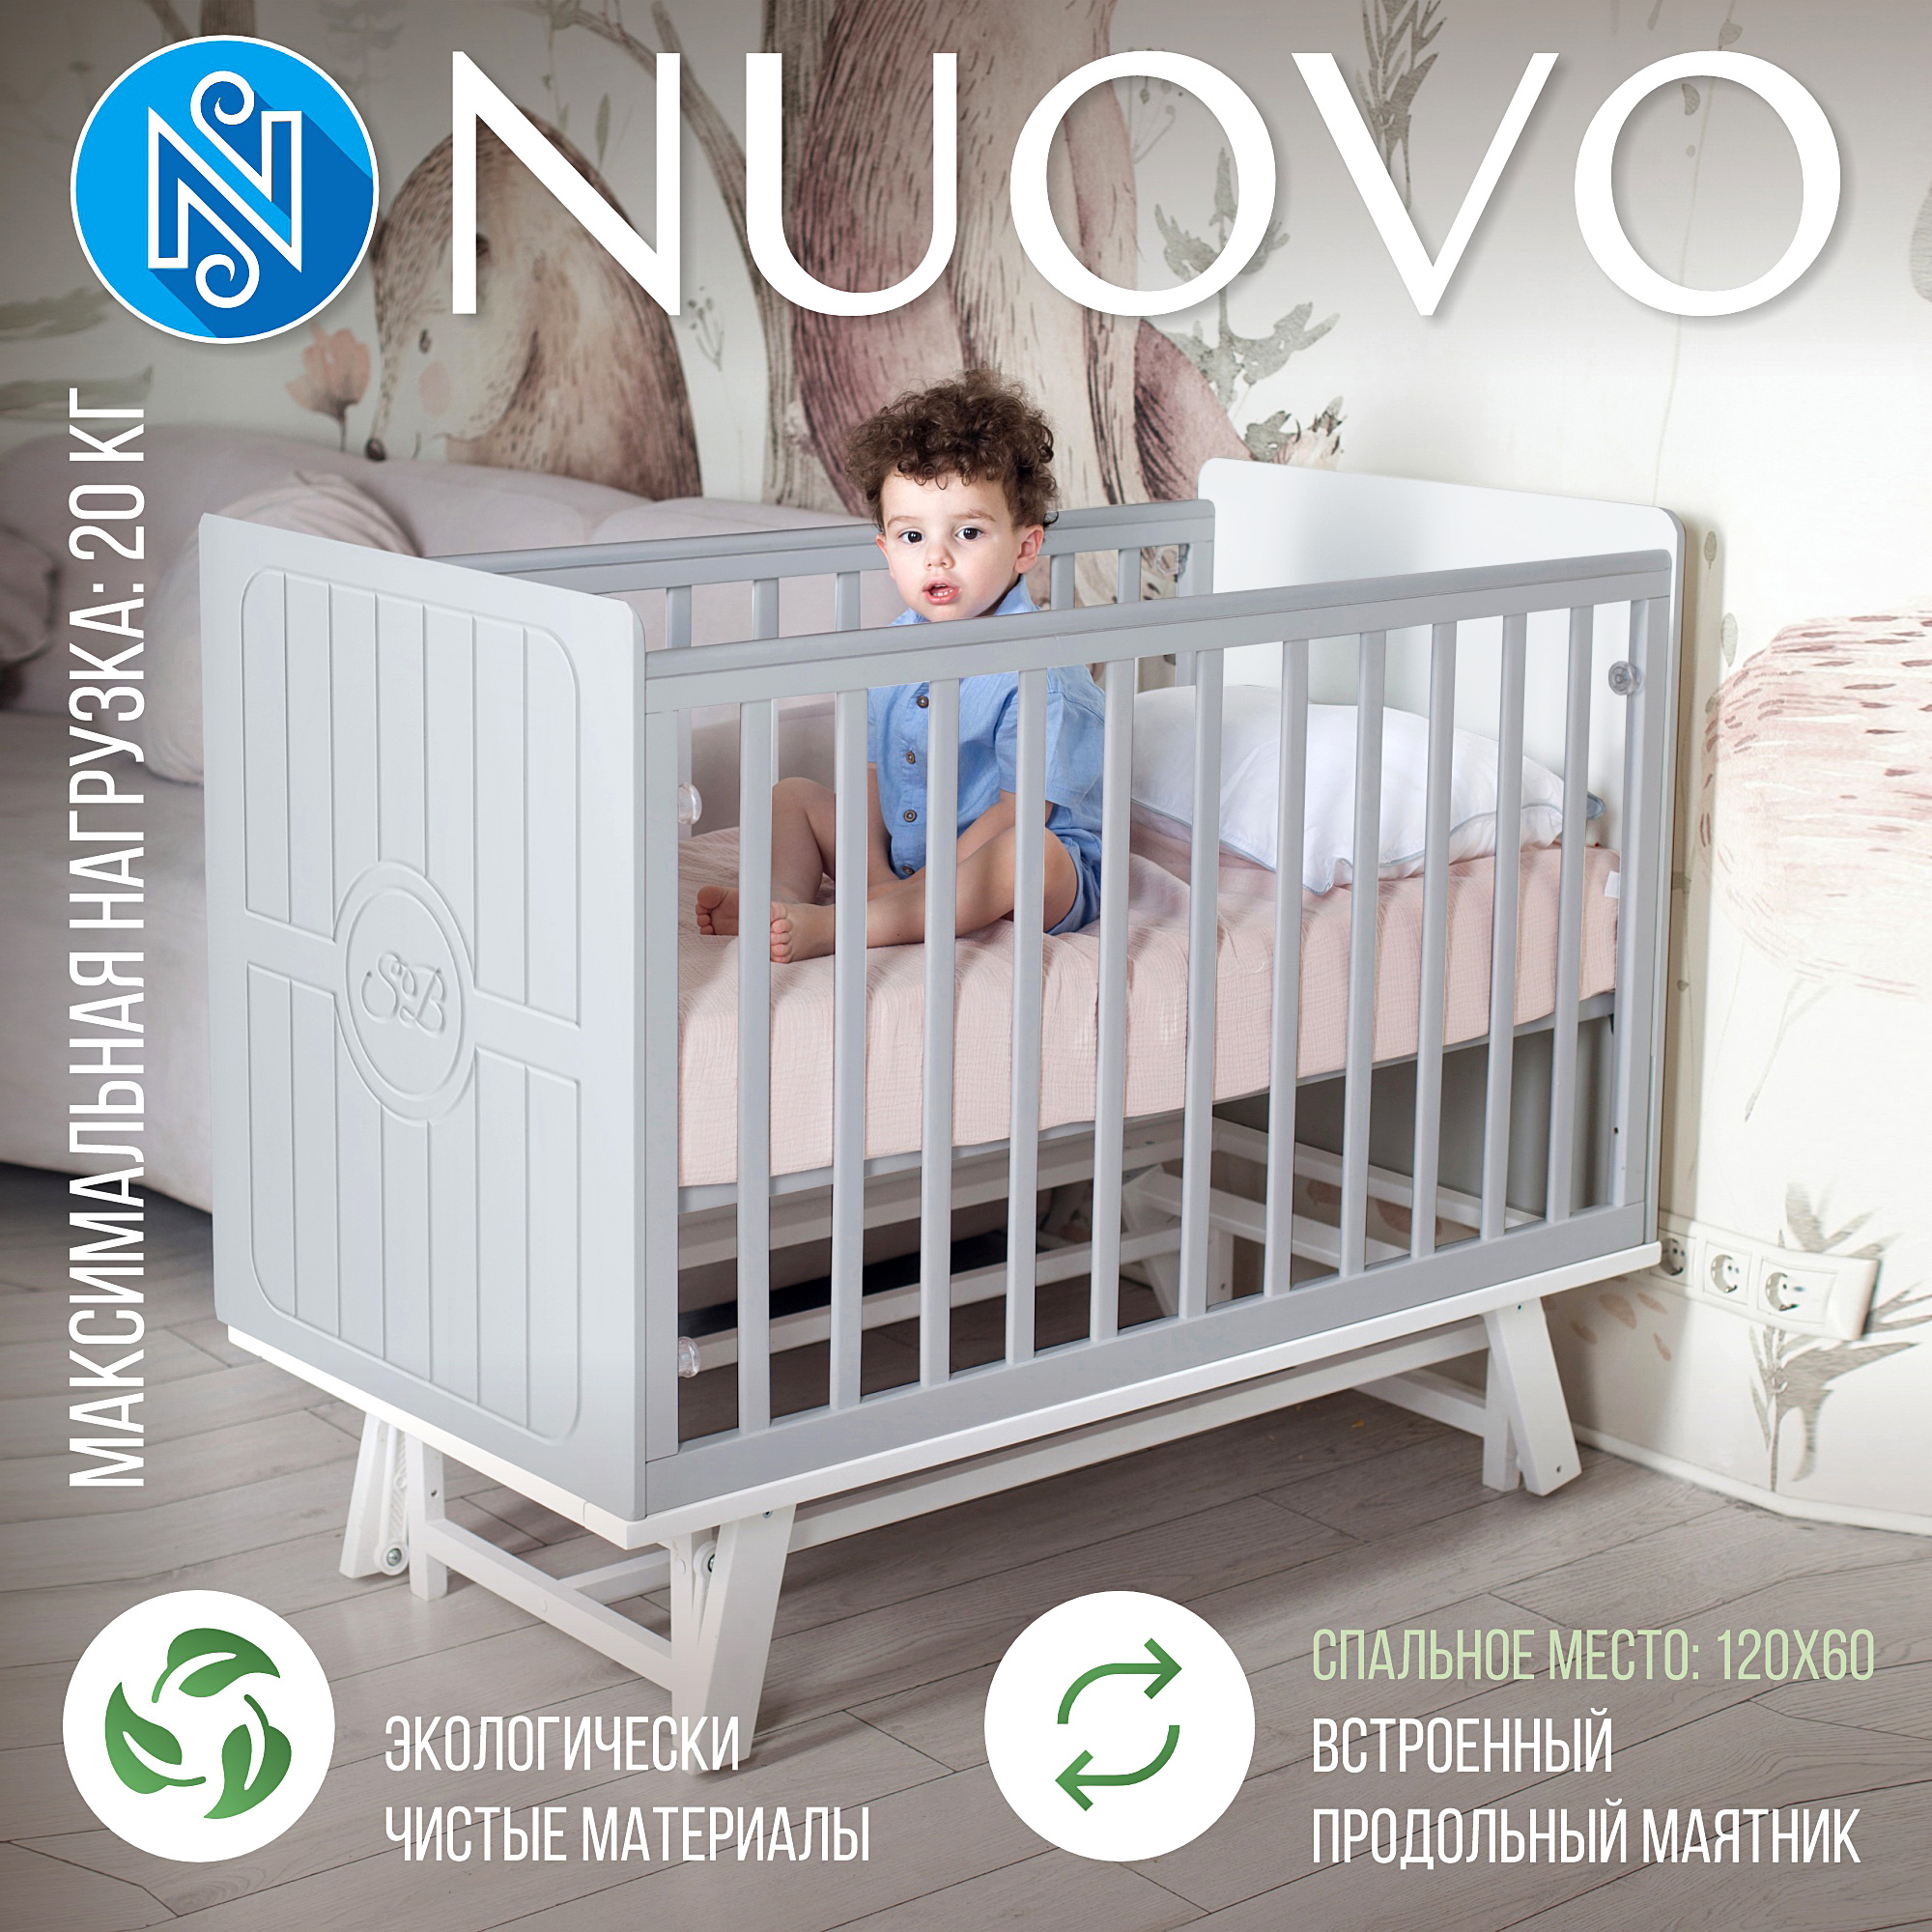 Детская кроватка Sweet Baby с маятником Nuovo СерыйБелый набор женских носовых платков nuovo размер 35х35см 10шт хл 35% пэ 65%